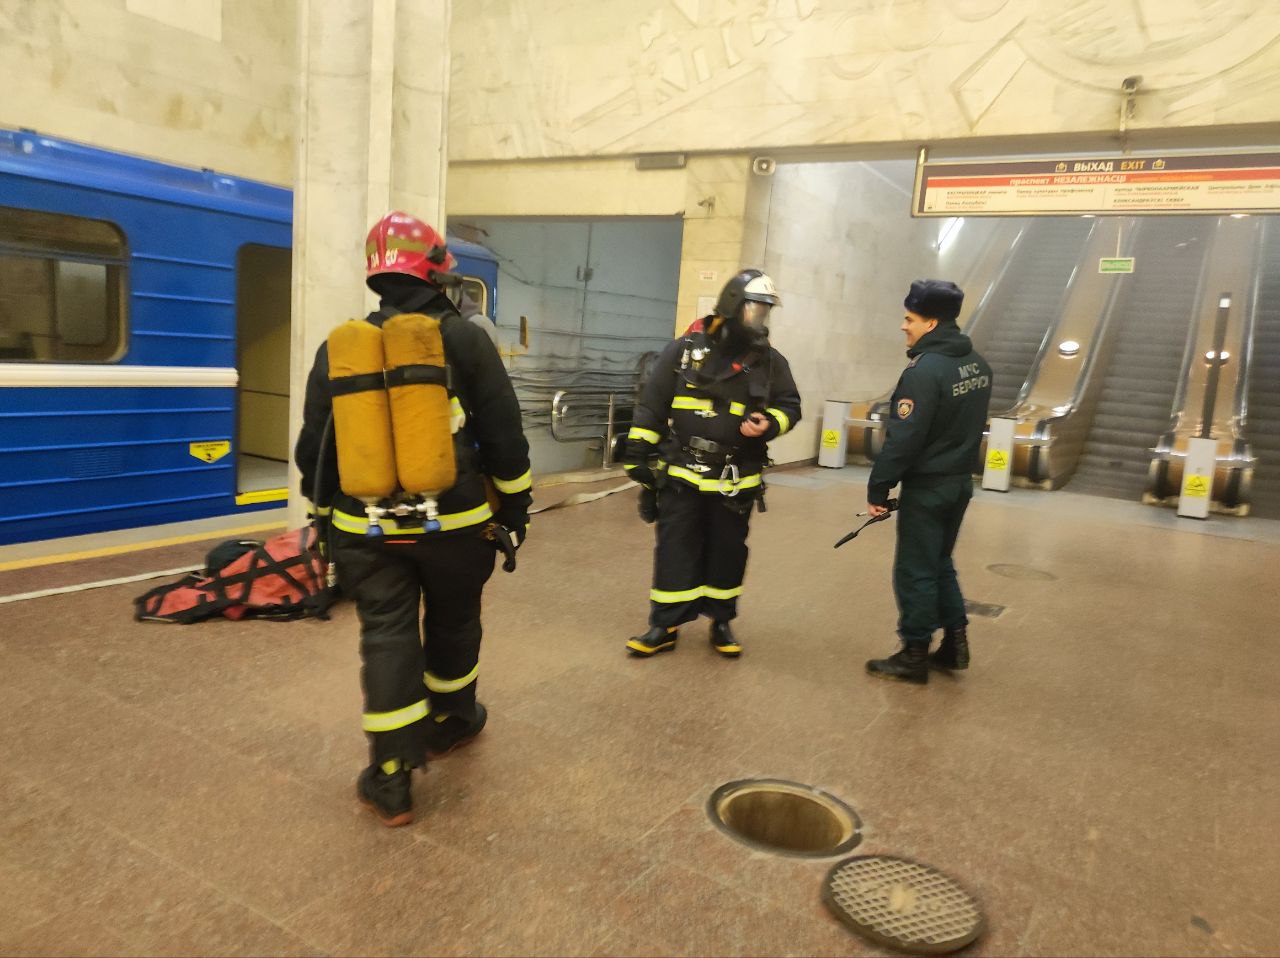 Загорелись два вагона метро. МЧС провело учение на станции "Октябрьская"